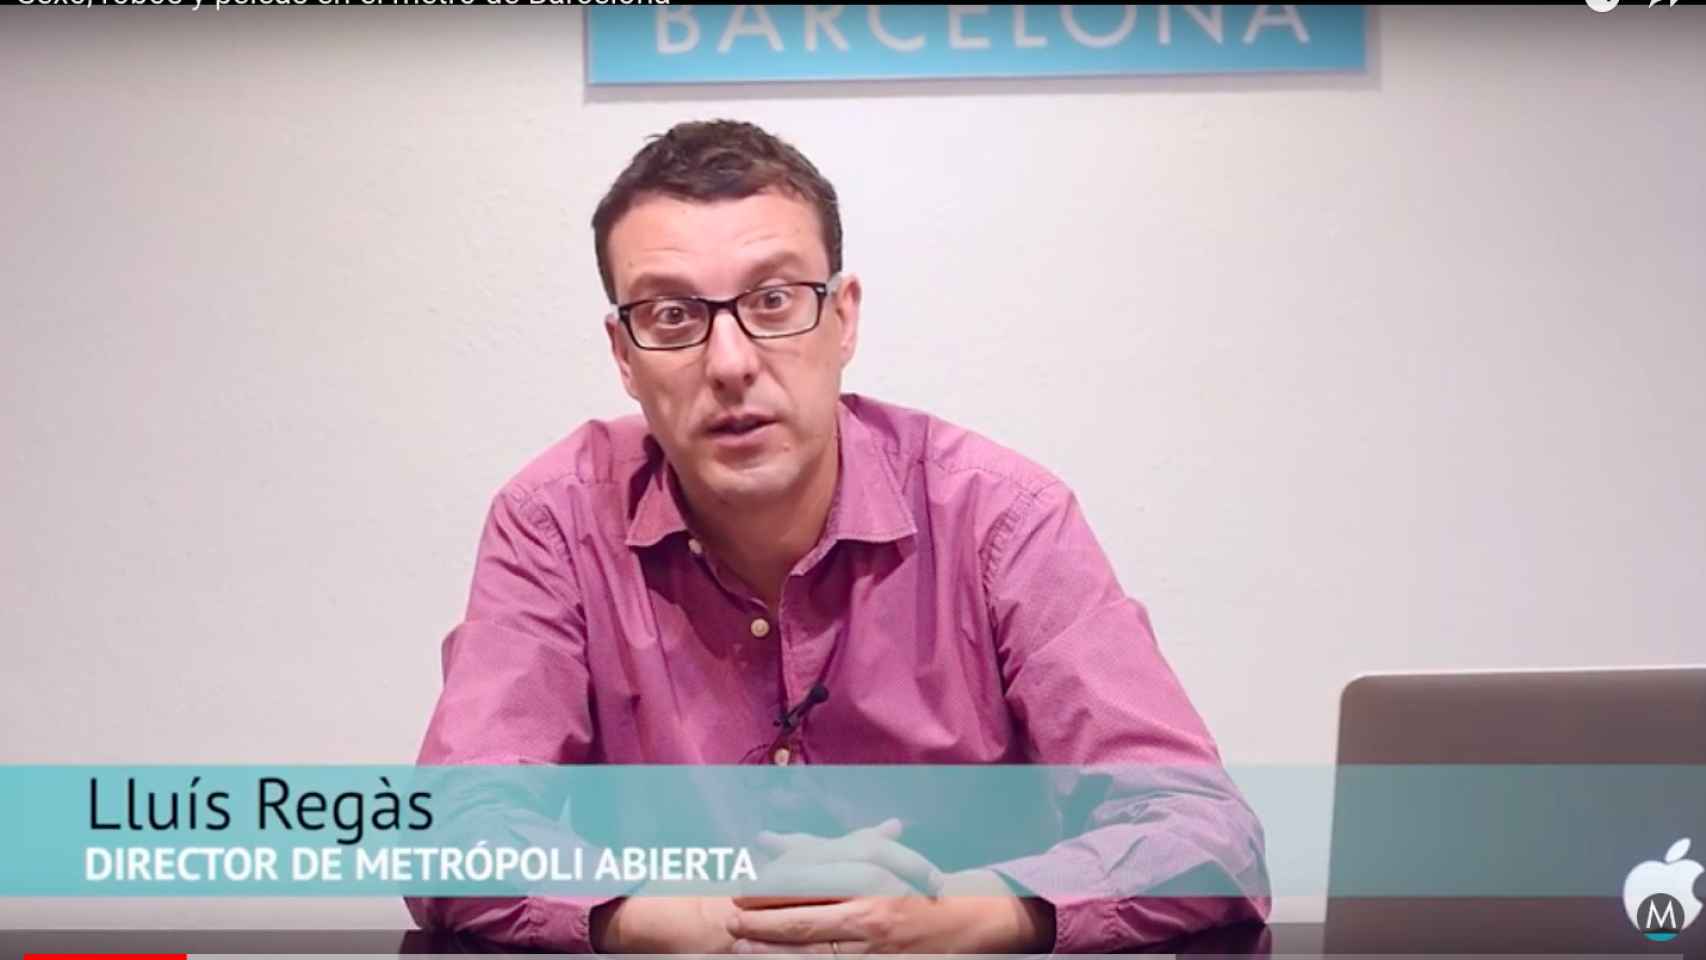 Lluís Regàs, en su videoblog, analiza los robos y otros casos del metro de Barcelona